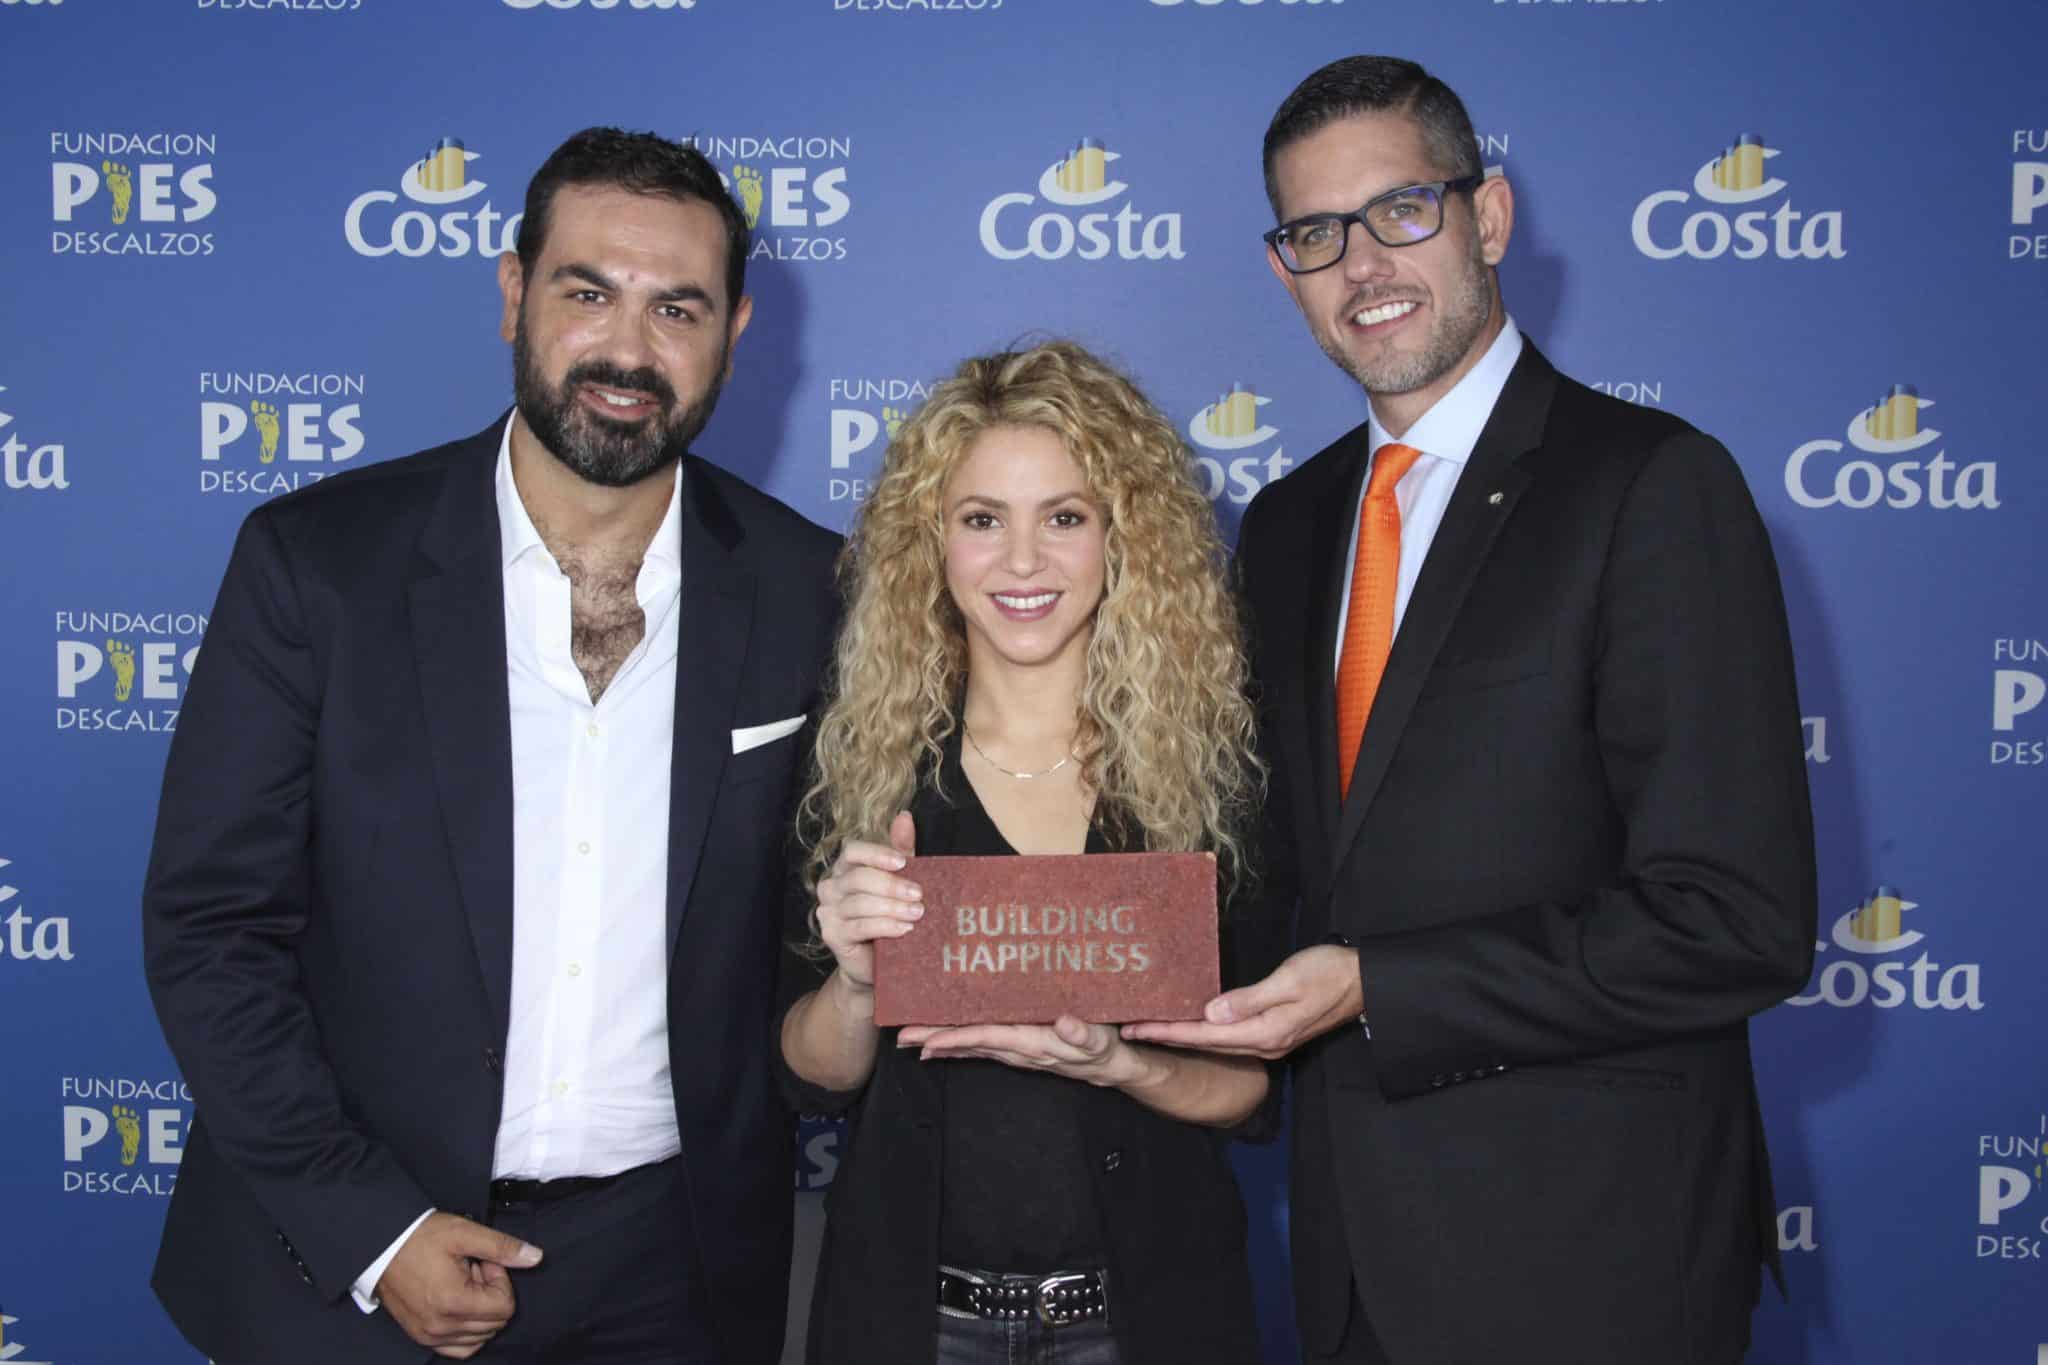 Shakiras Stiftung „Pies Descalzos“ und Costa Crociere bauen zusammen eine Schule in Kolumbien